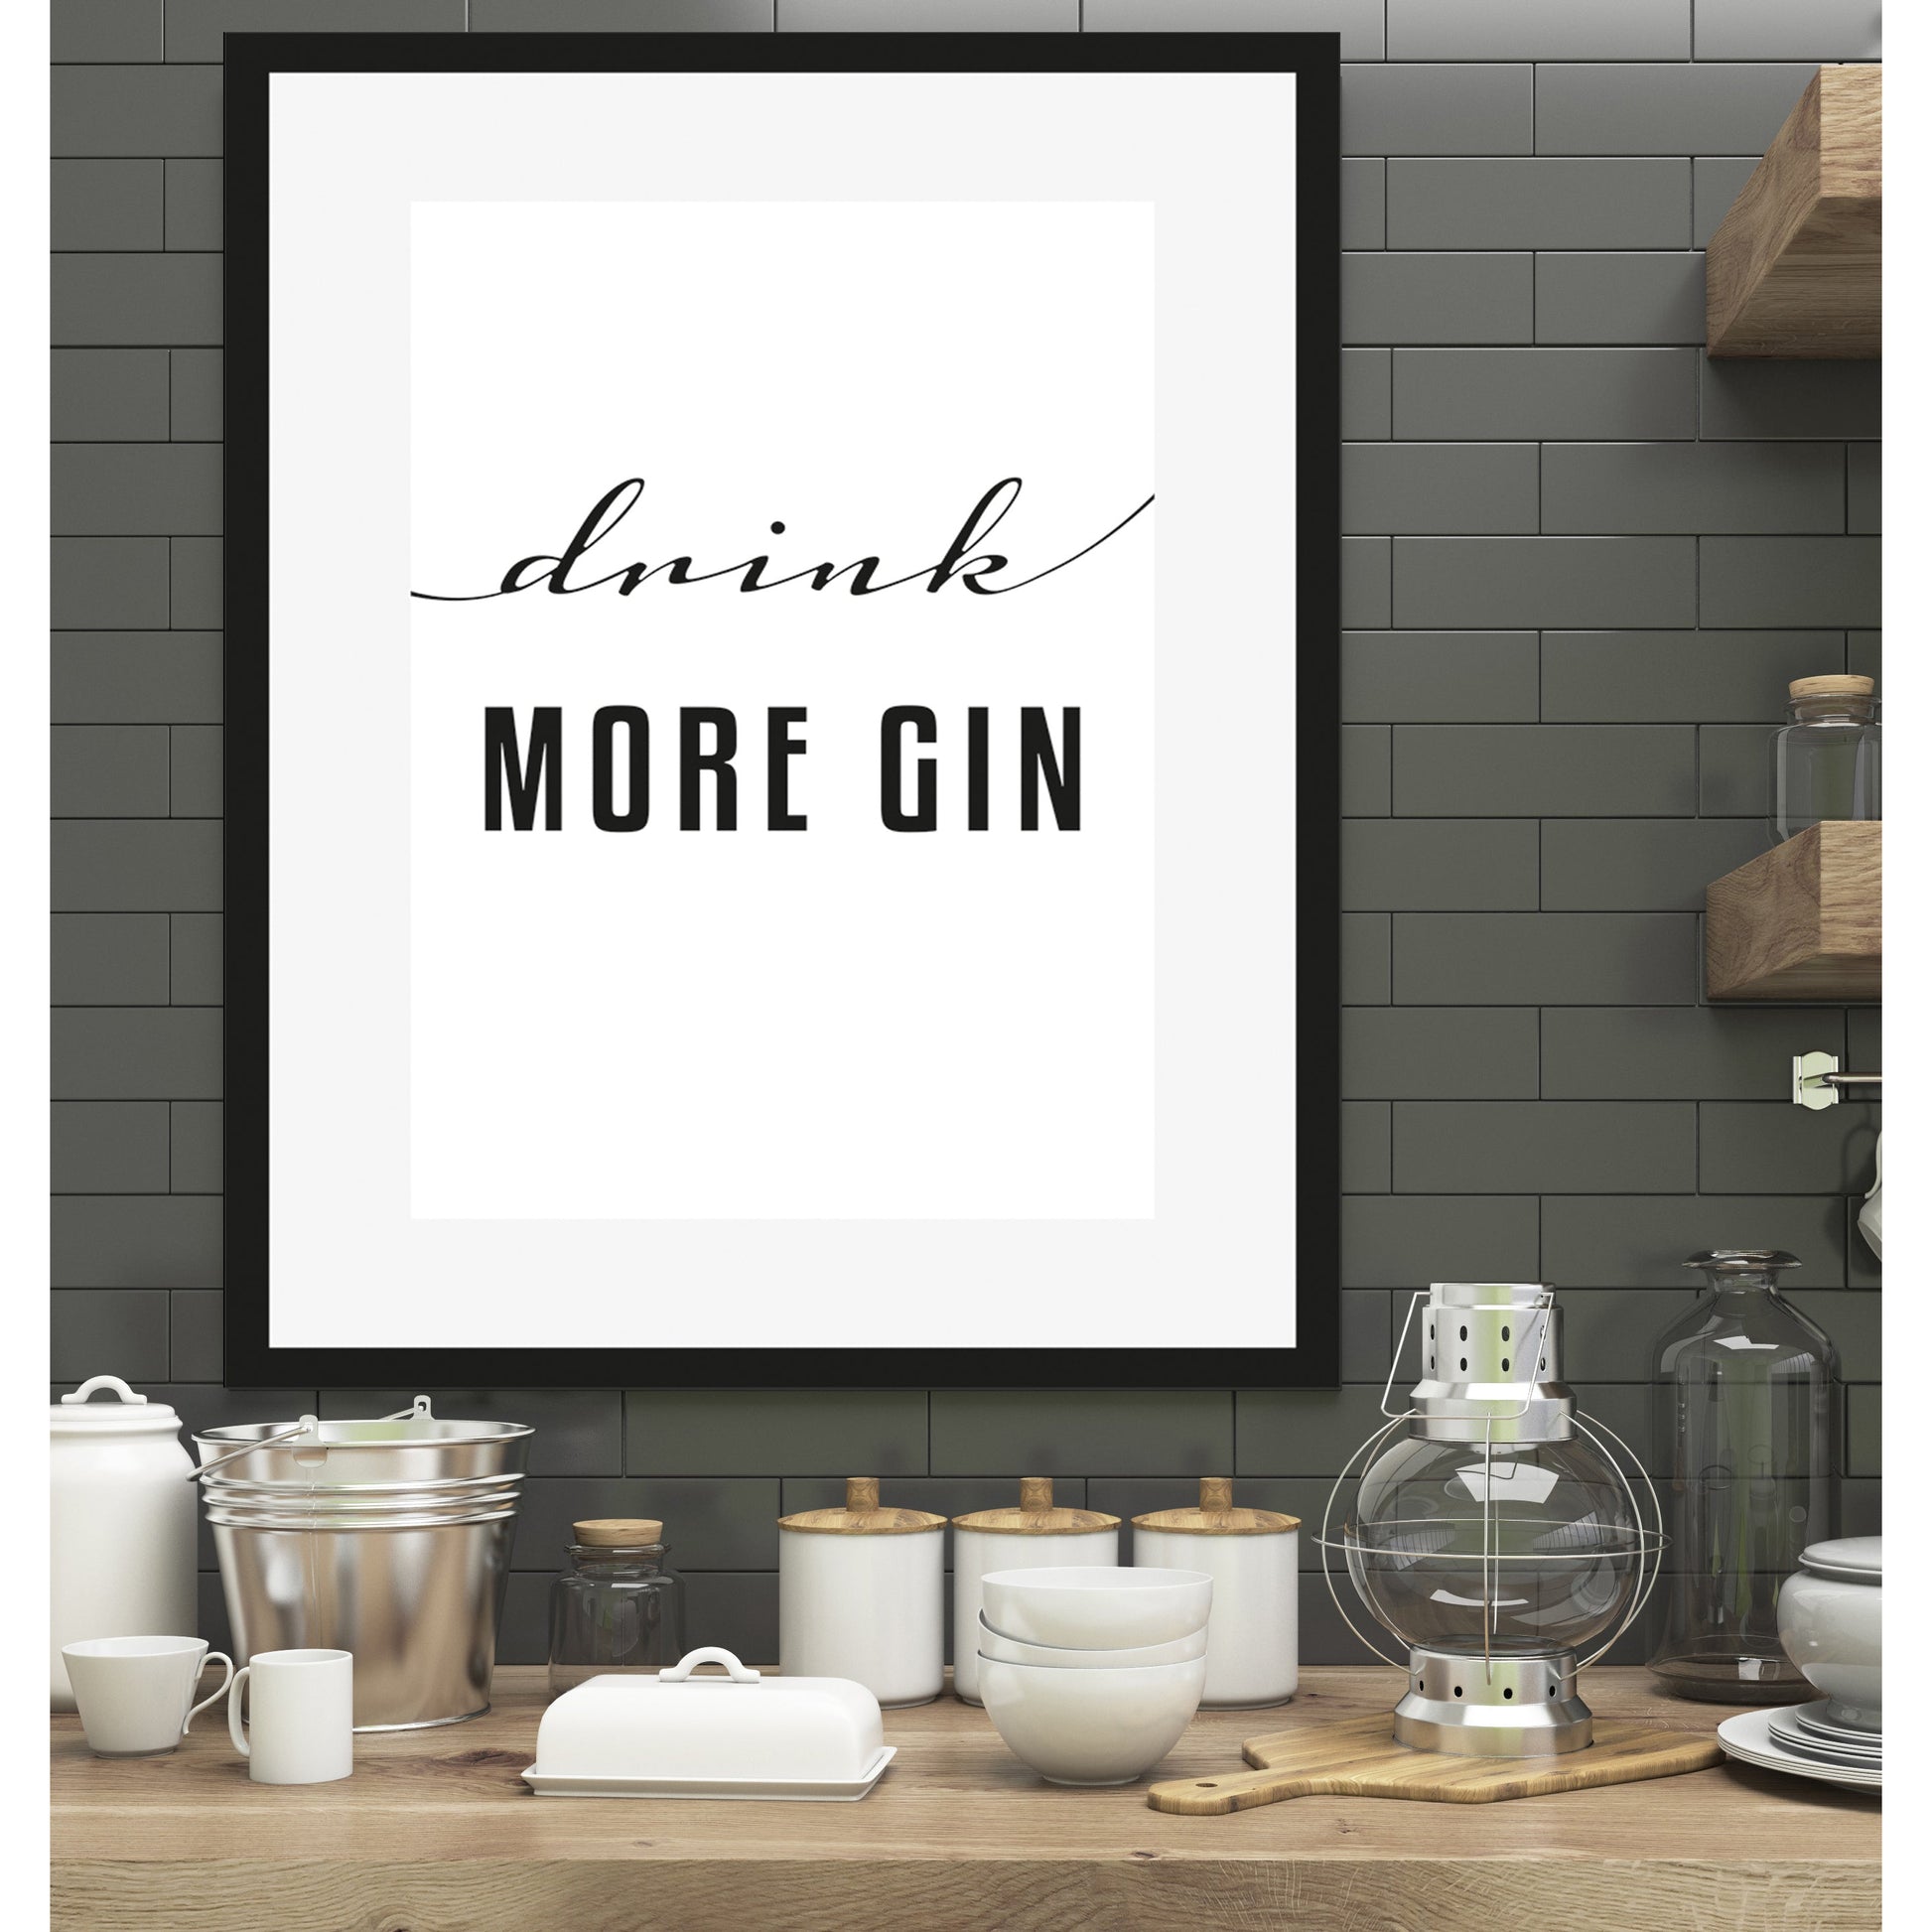 Rahmenbild - Drink More Gin Wohnbeispiel